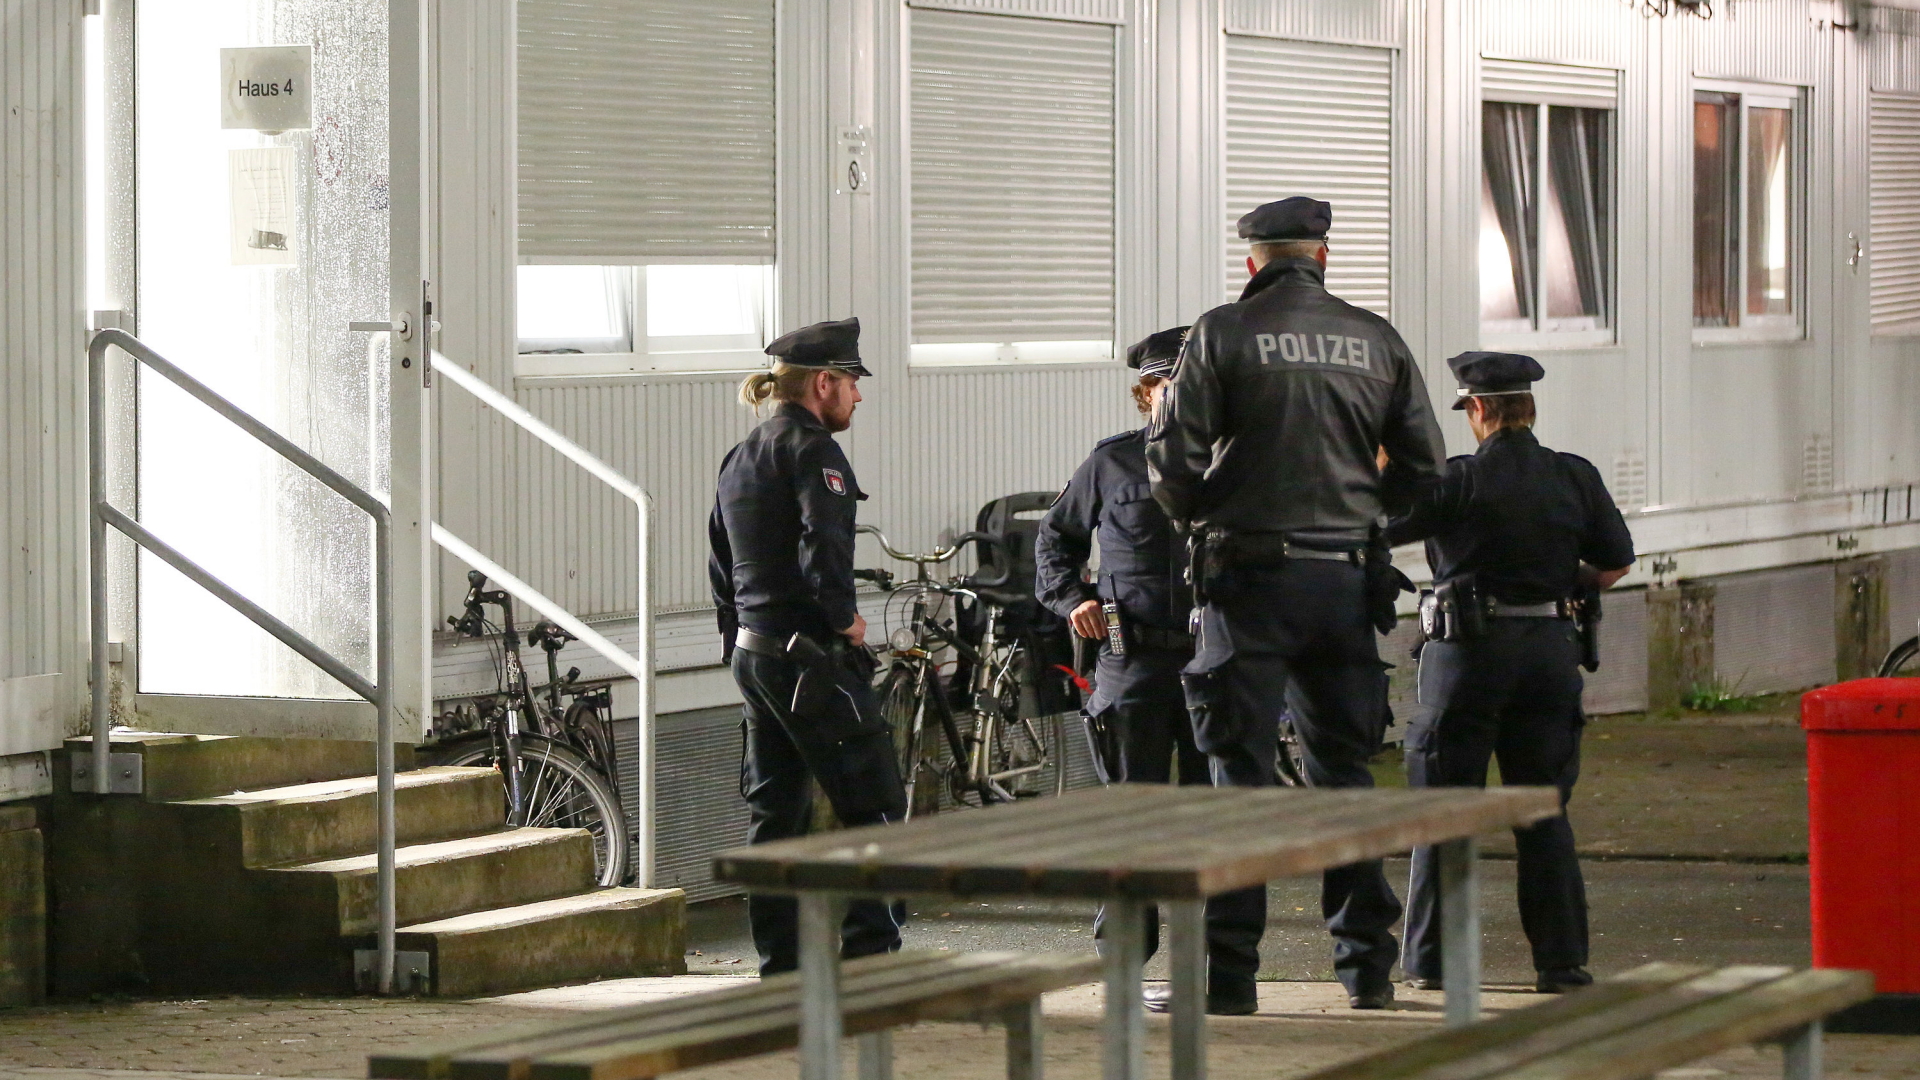 Polizisten stehen vor einem der Wohncontainer der Flüchtlingsunterkunft in Hamburg-Langenhorn. | Bildquelle: dpa